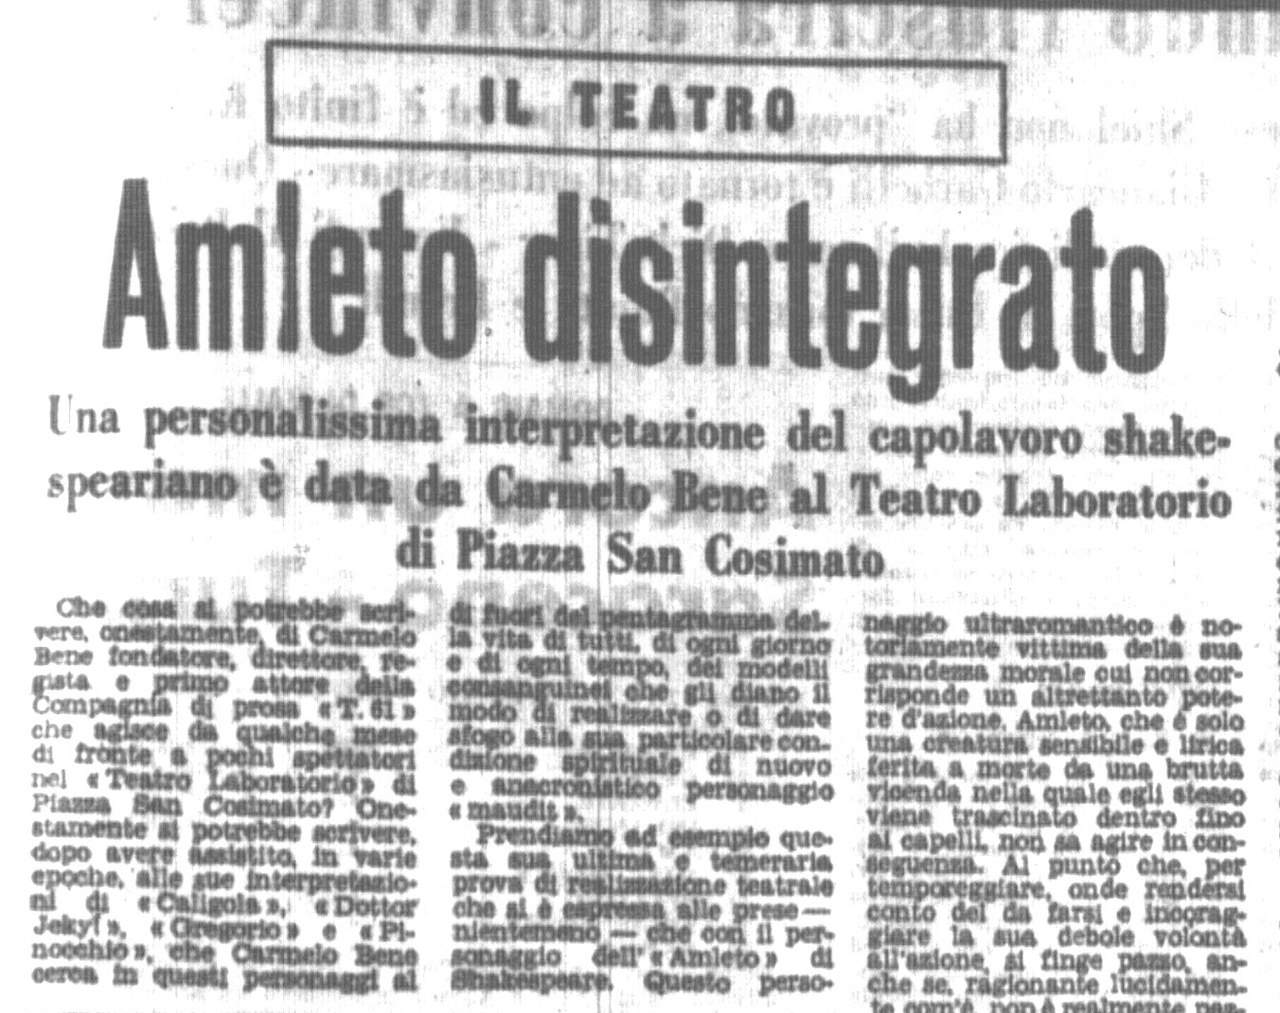 Vice, &lsquo;Amleto disintegrato&rsquo;, Giornale d&rsquo;Italia, 23-24 ottobre 1962
